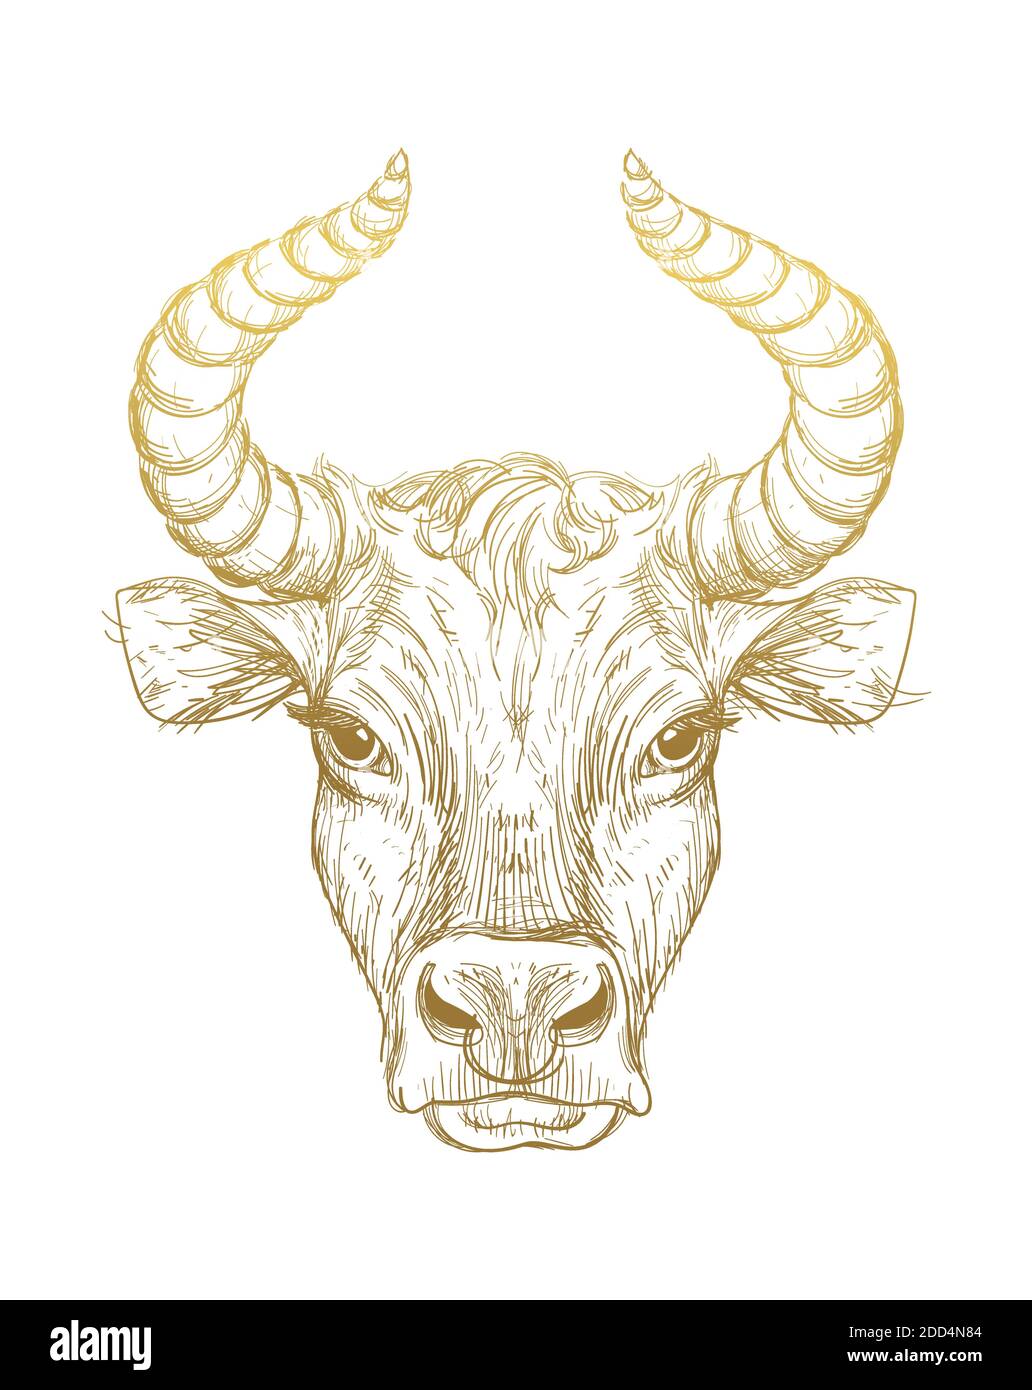 Bonne année 2021 de l'Ox, Ox-Taurus. Dessin linéaire doré sur fond blanc, tarot, tatouage, horoscope chinois, astrologie et signes du zodiaque. V Illustration de Vecteur